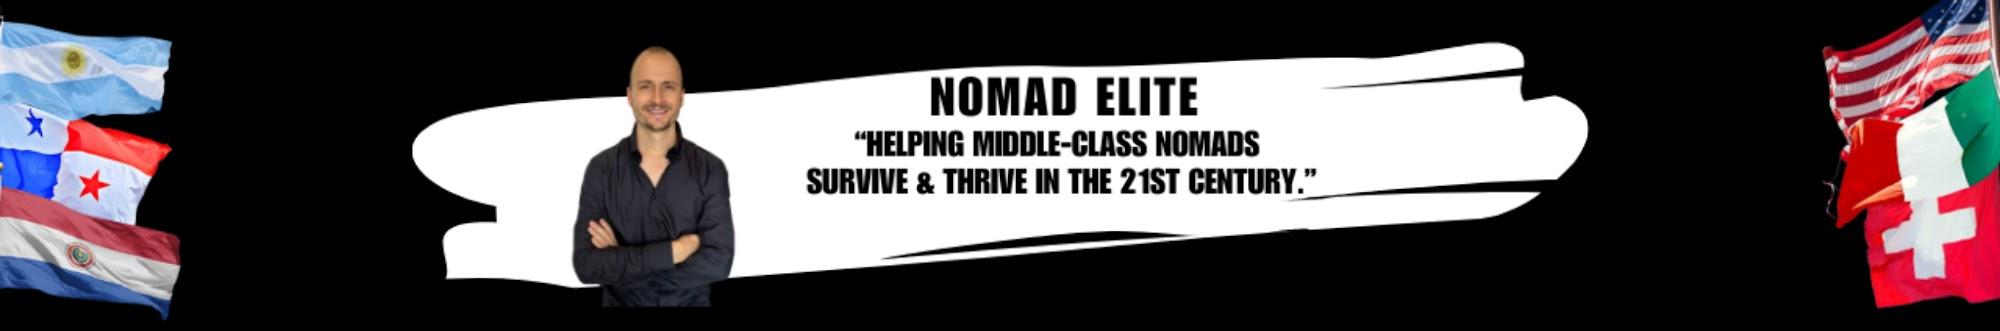 Nomad Elite